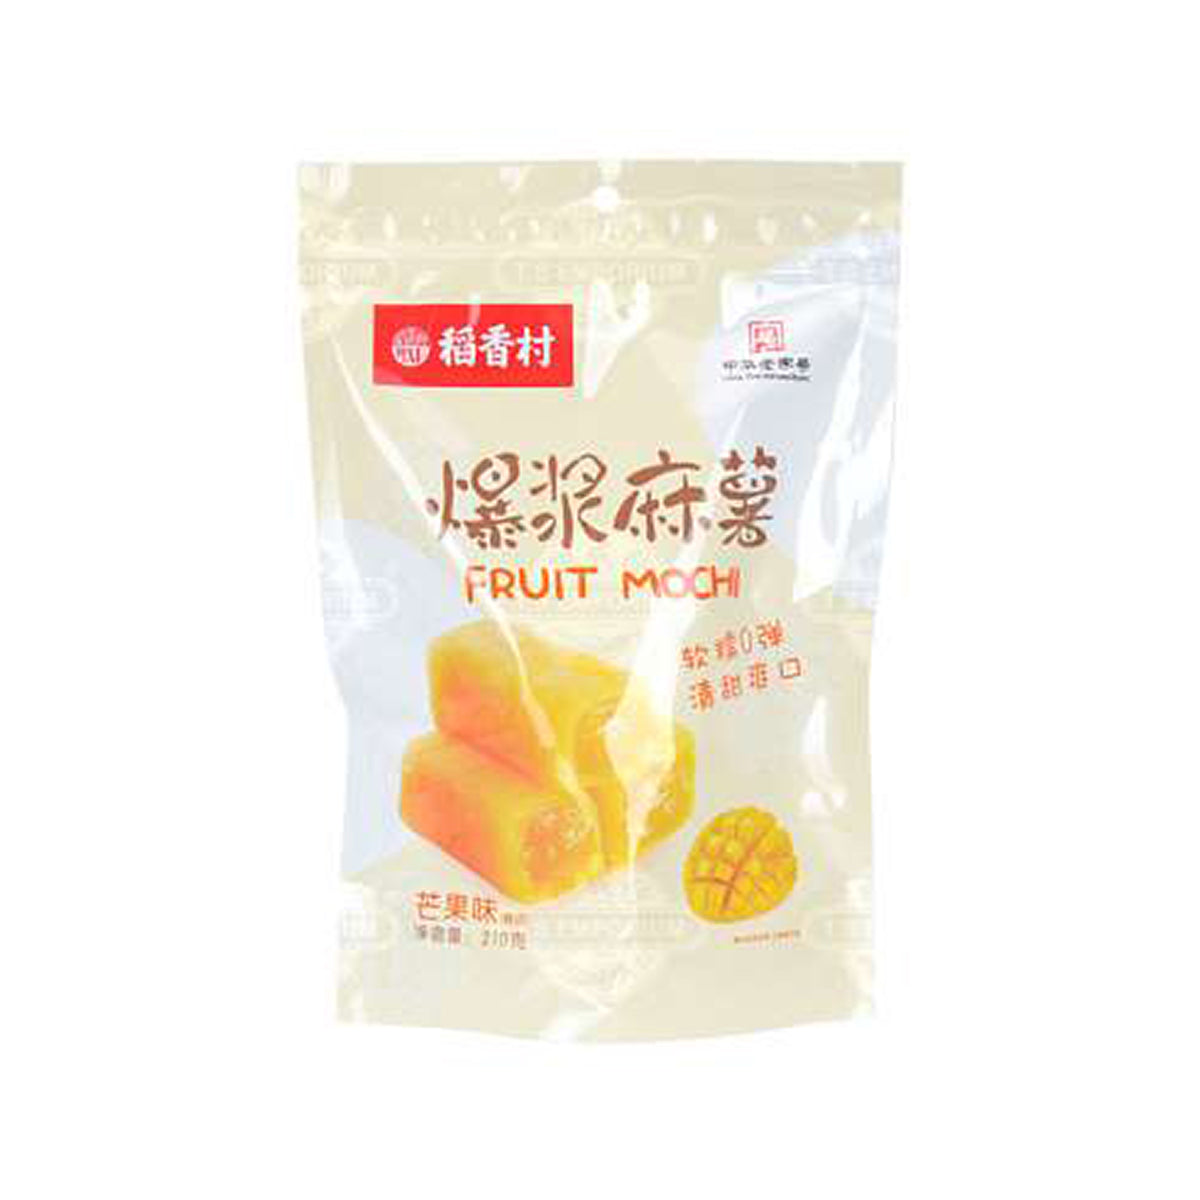 dao xiang cun fruit mochi mango flavor - 210g